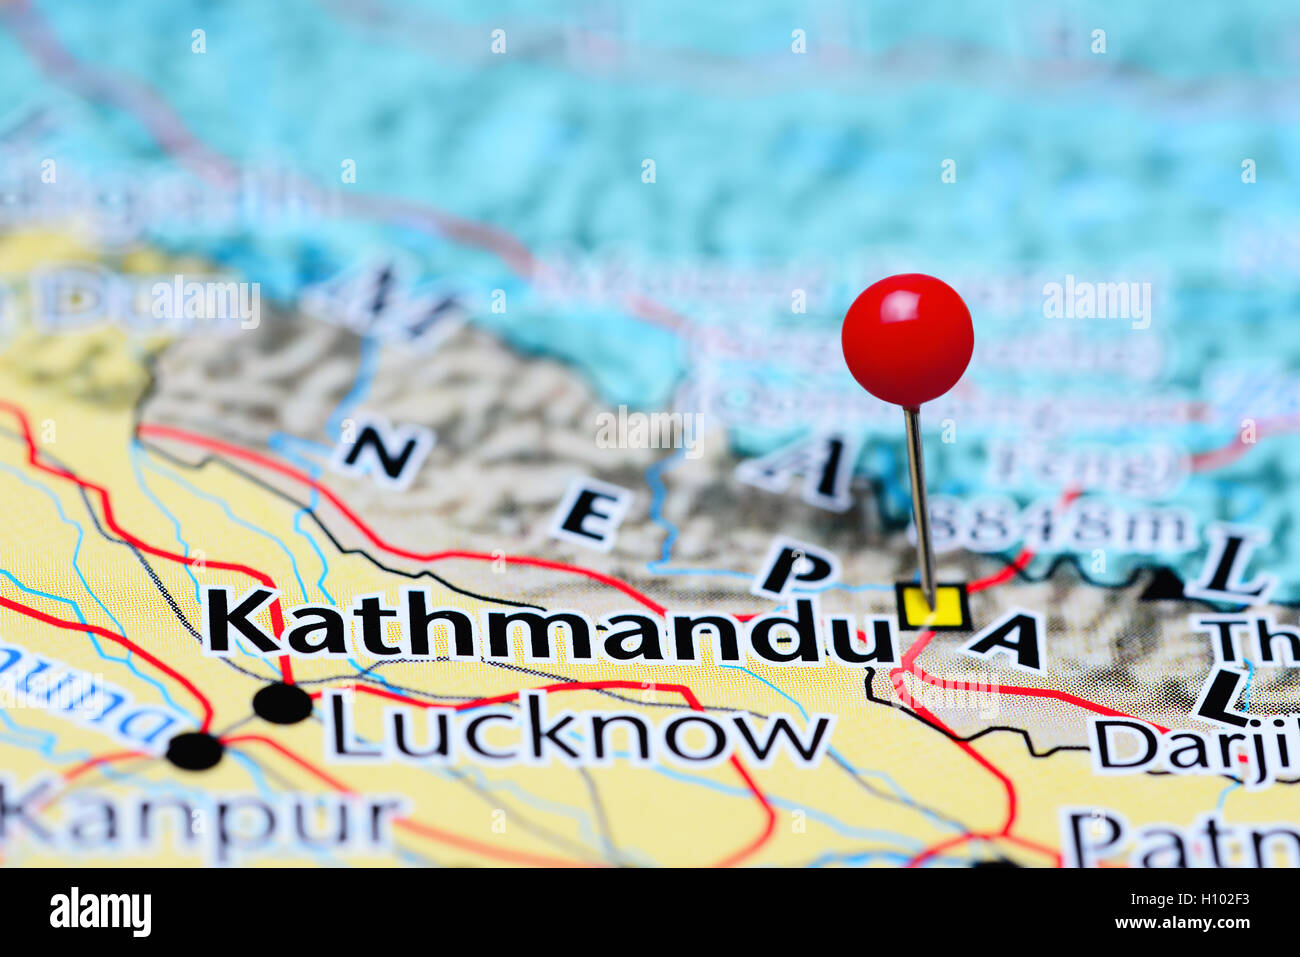 Kathmandu pinned on a map of Nepal Stock Photo